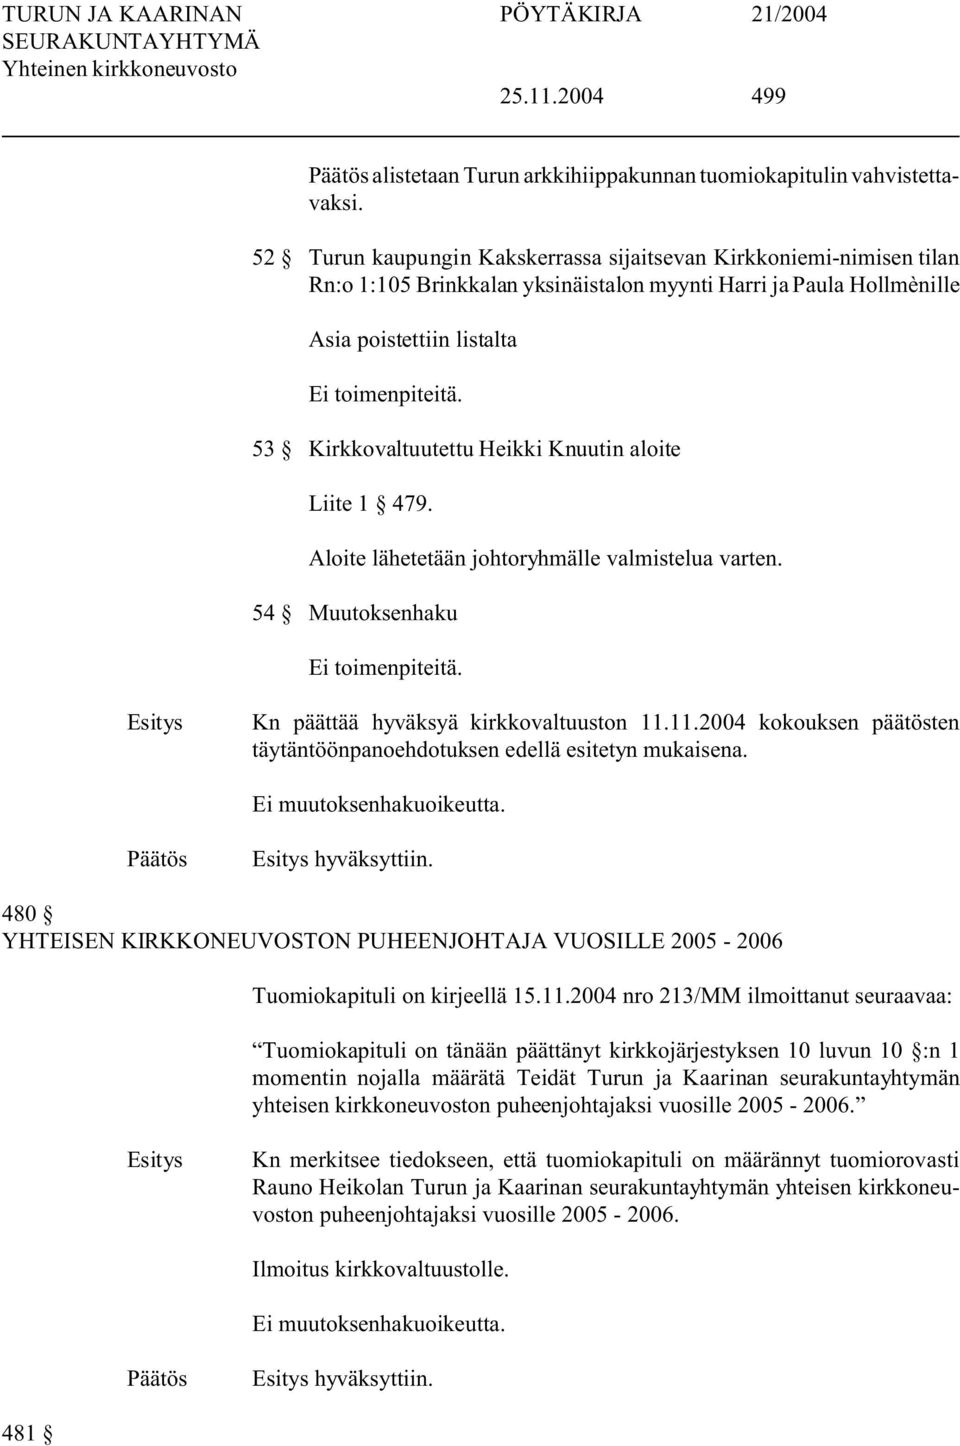 53 Kirkkovaltuutettu Heikki Knuutin aloite Liite 1 479. Aloite lähetetään johtoryhmälle valmistelua varten. 54 Muutoksenhaku Ei toimenpiteitä. Kn päättää hyväksyä kirkkovaltuuston 11.